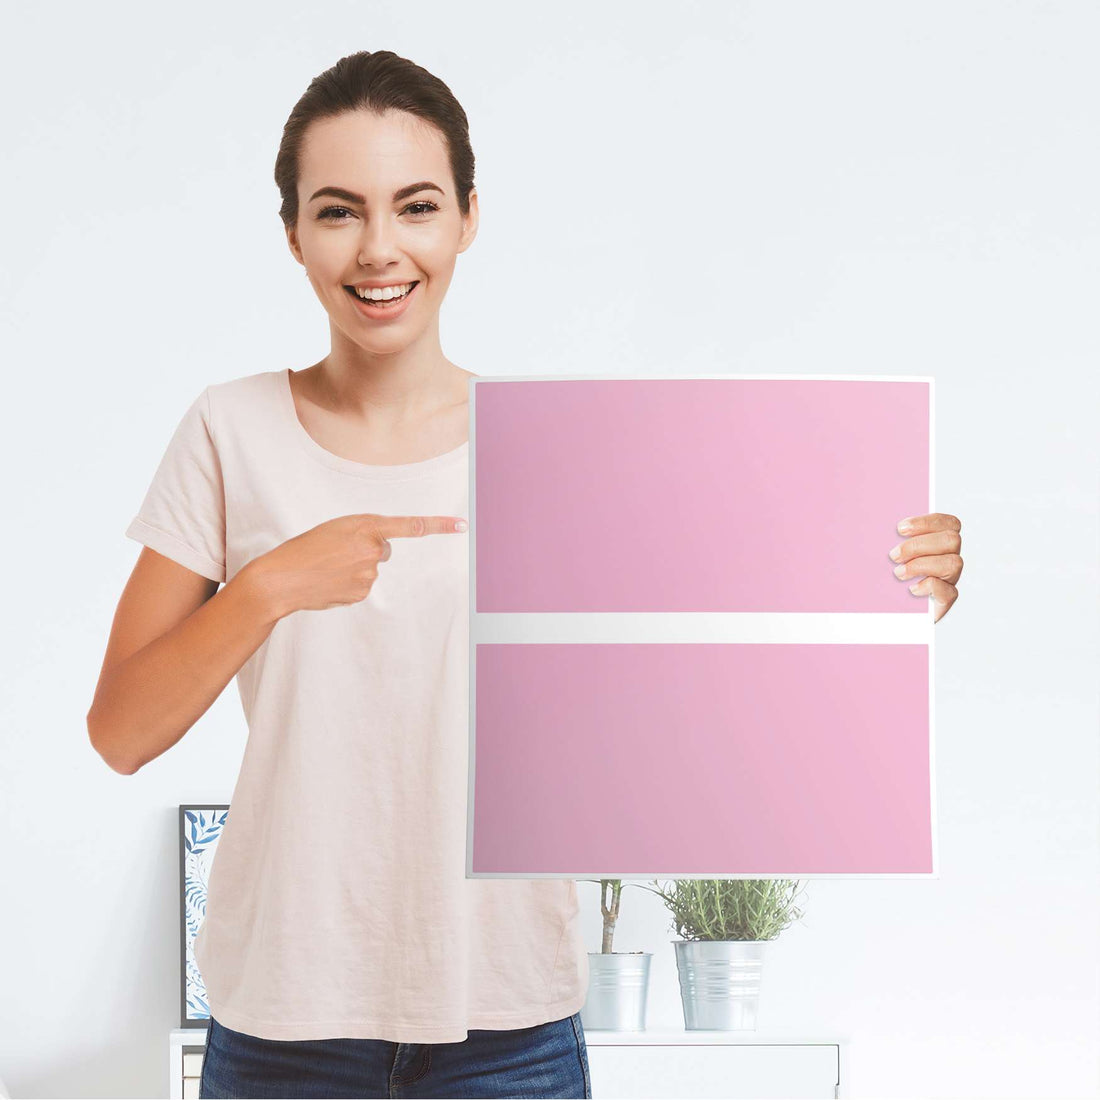 Möbelfolie Pink Light - IKEA Malm Kommode 2 Schubladen - Folie